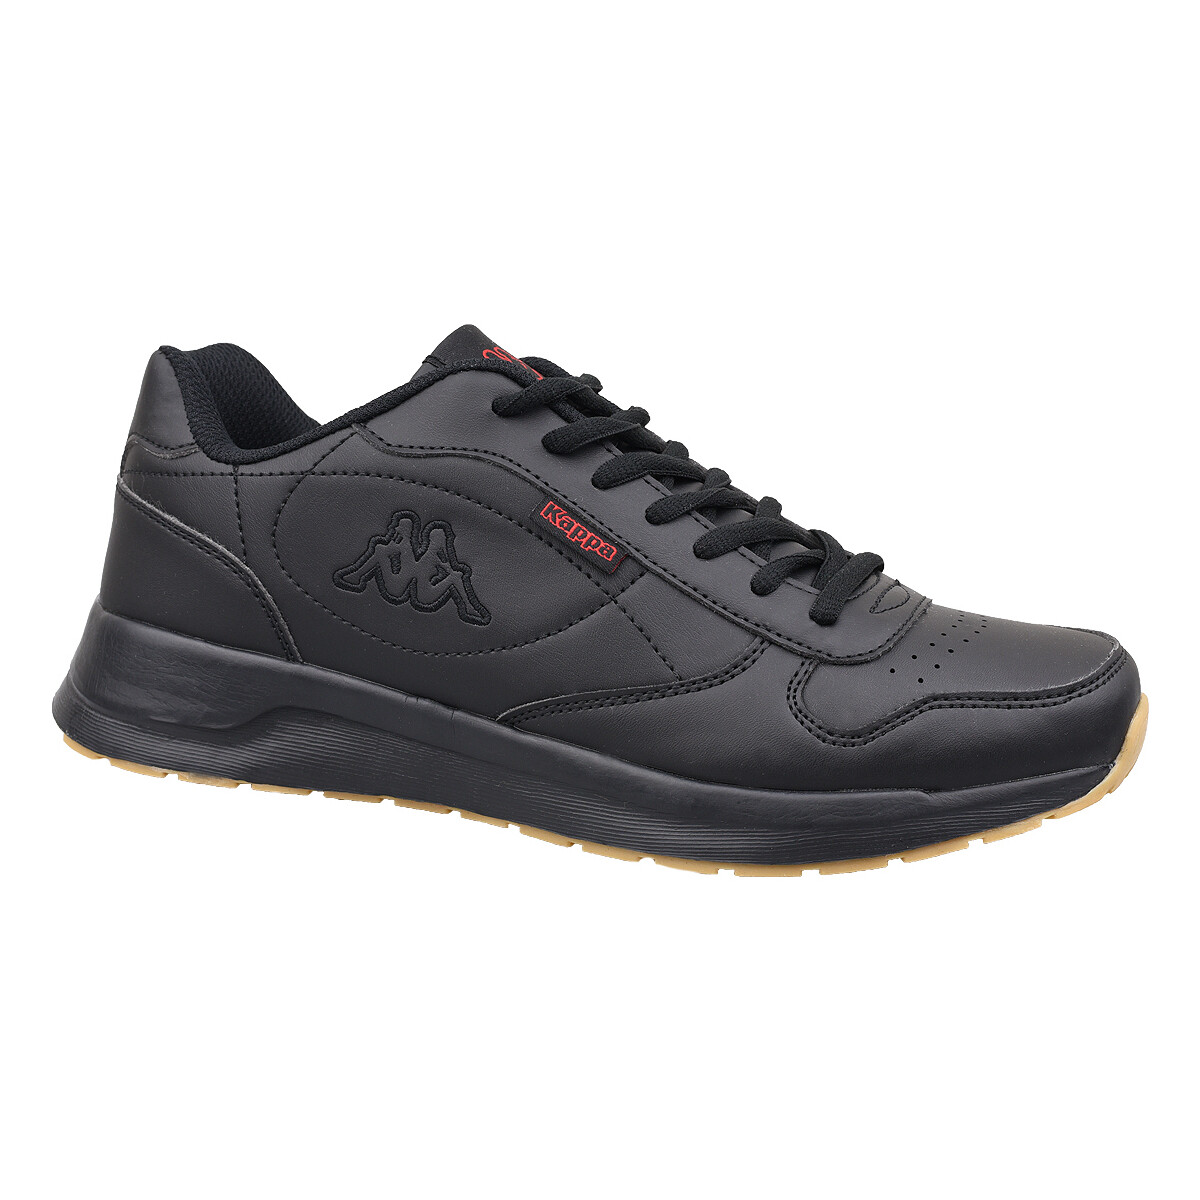 Παπούτσια Άνδρας Χαμηλά Sneakers Kappa Base II Black